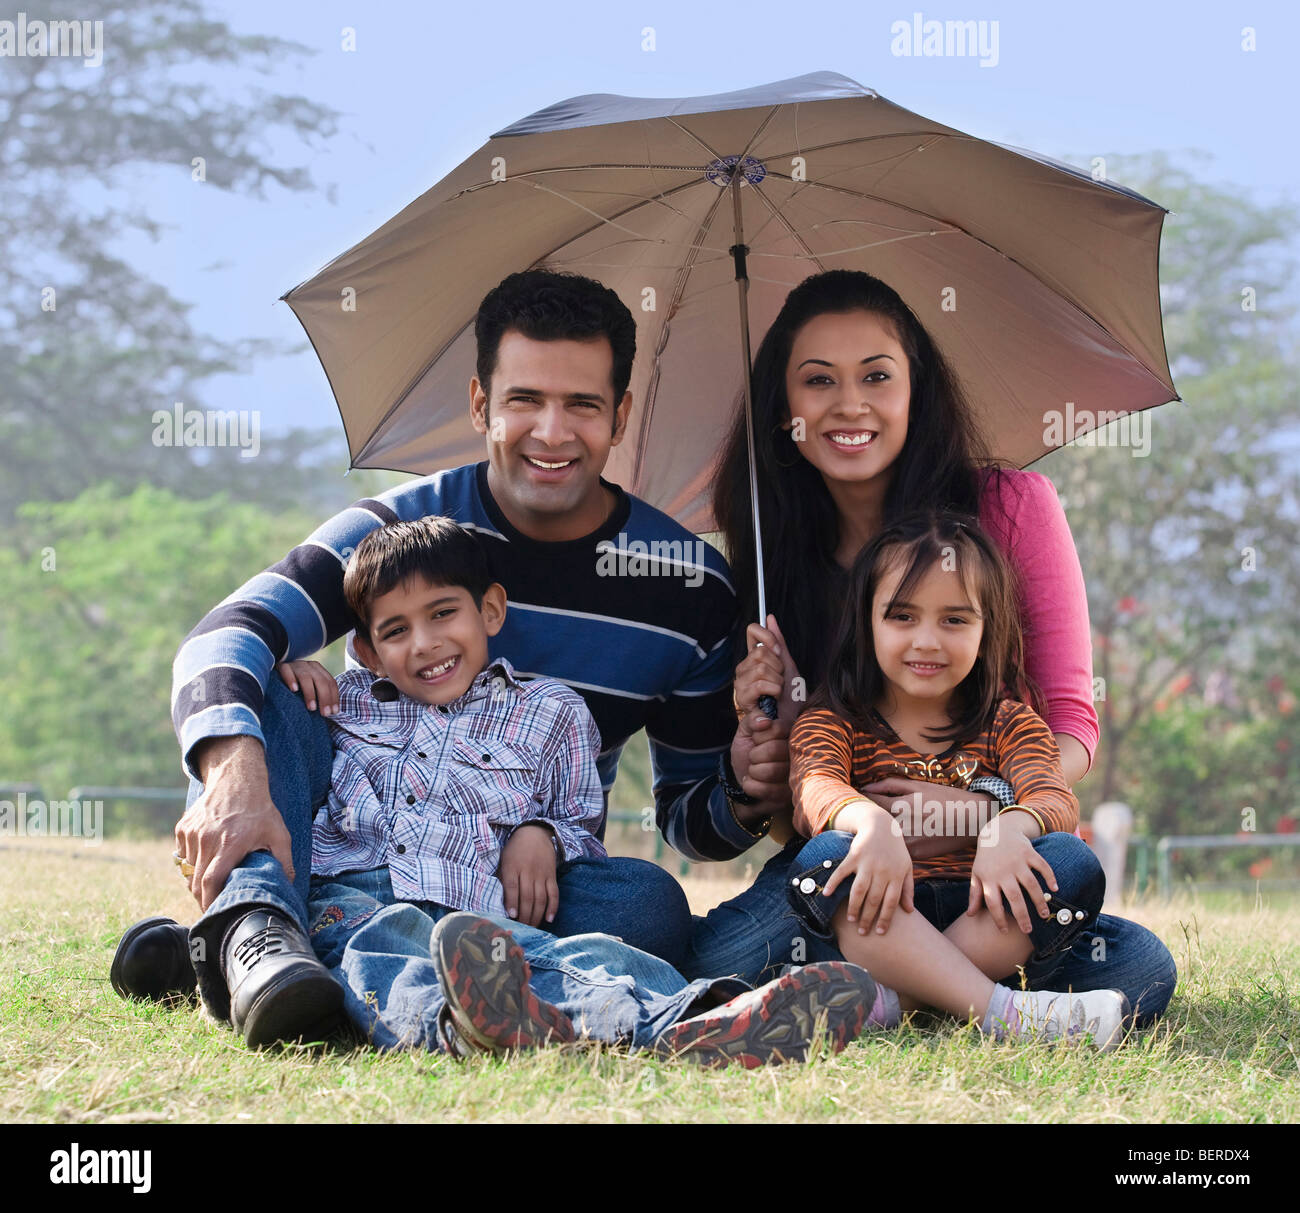 Famille posant avec un parapluie Banque D'Images